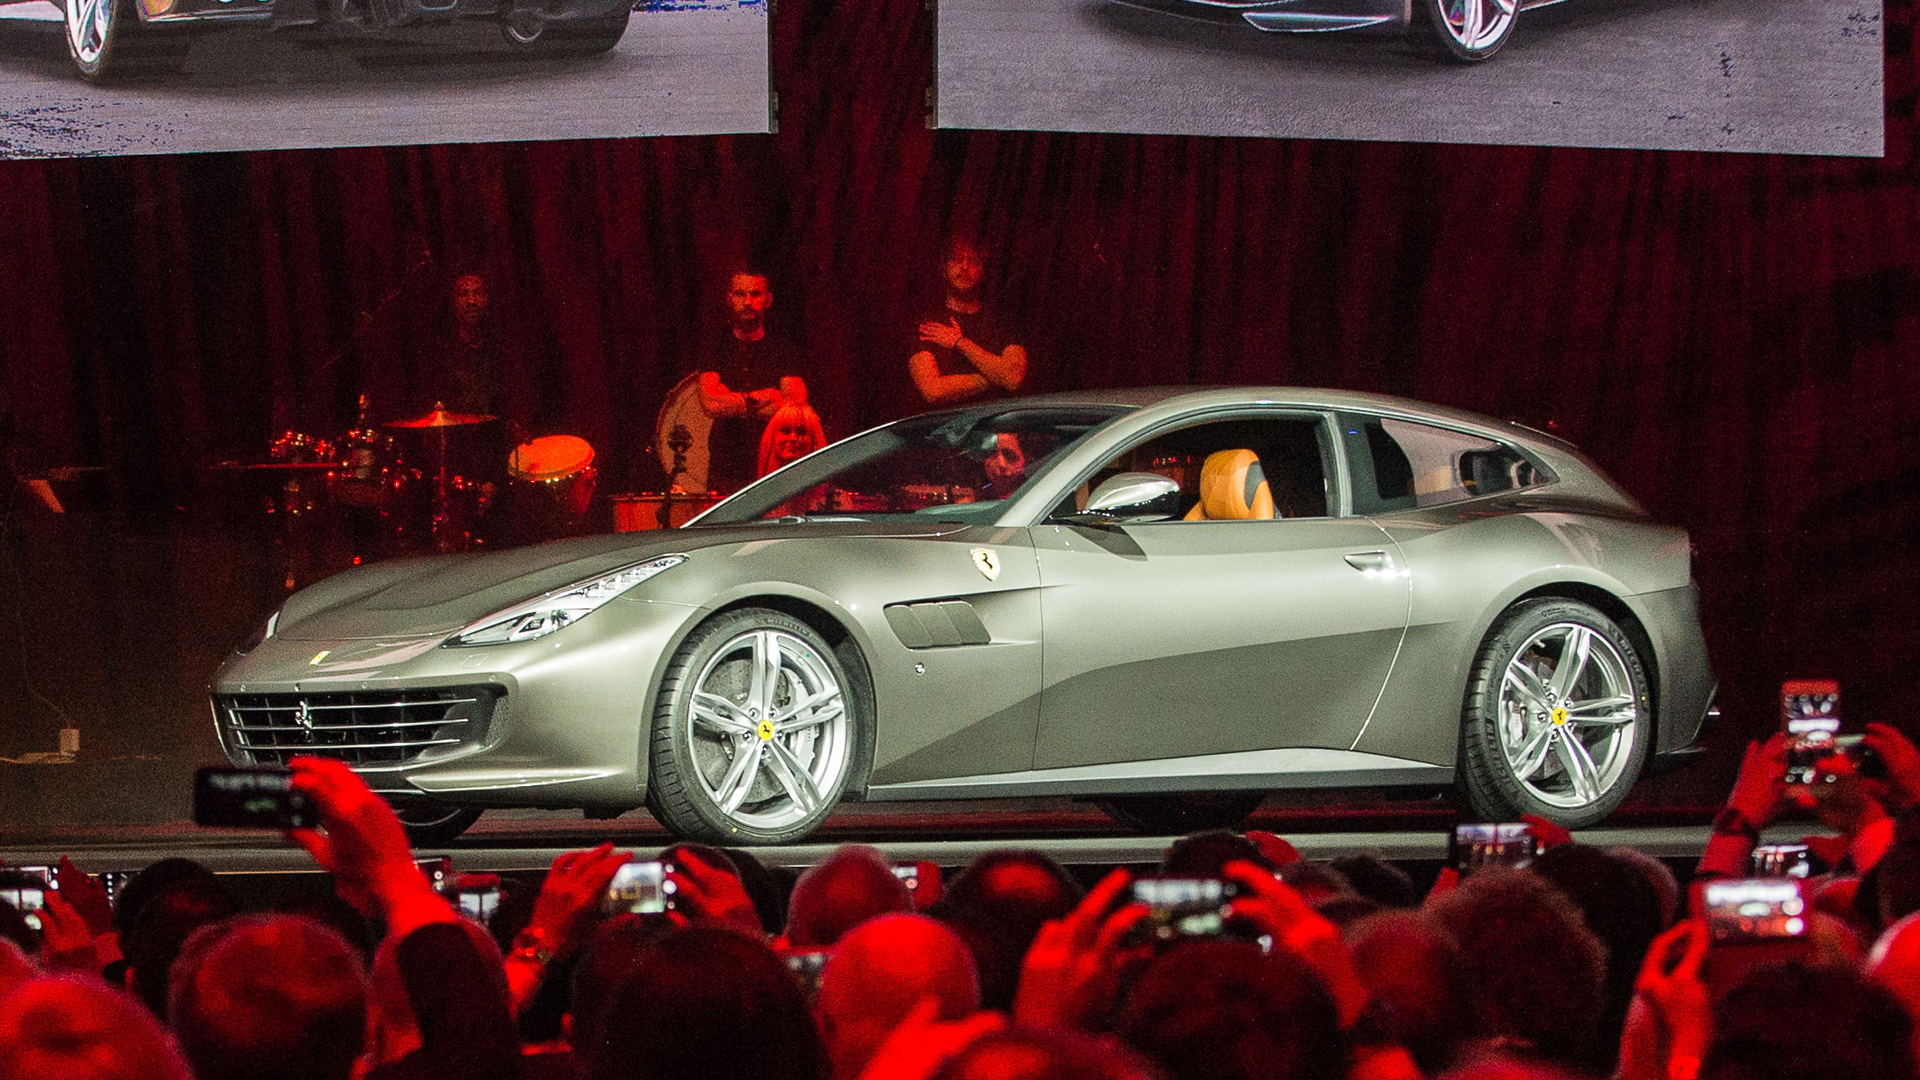 Ferrari GTC4 Lusso launch at Villa Erba, February 15, 2016